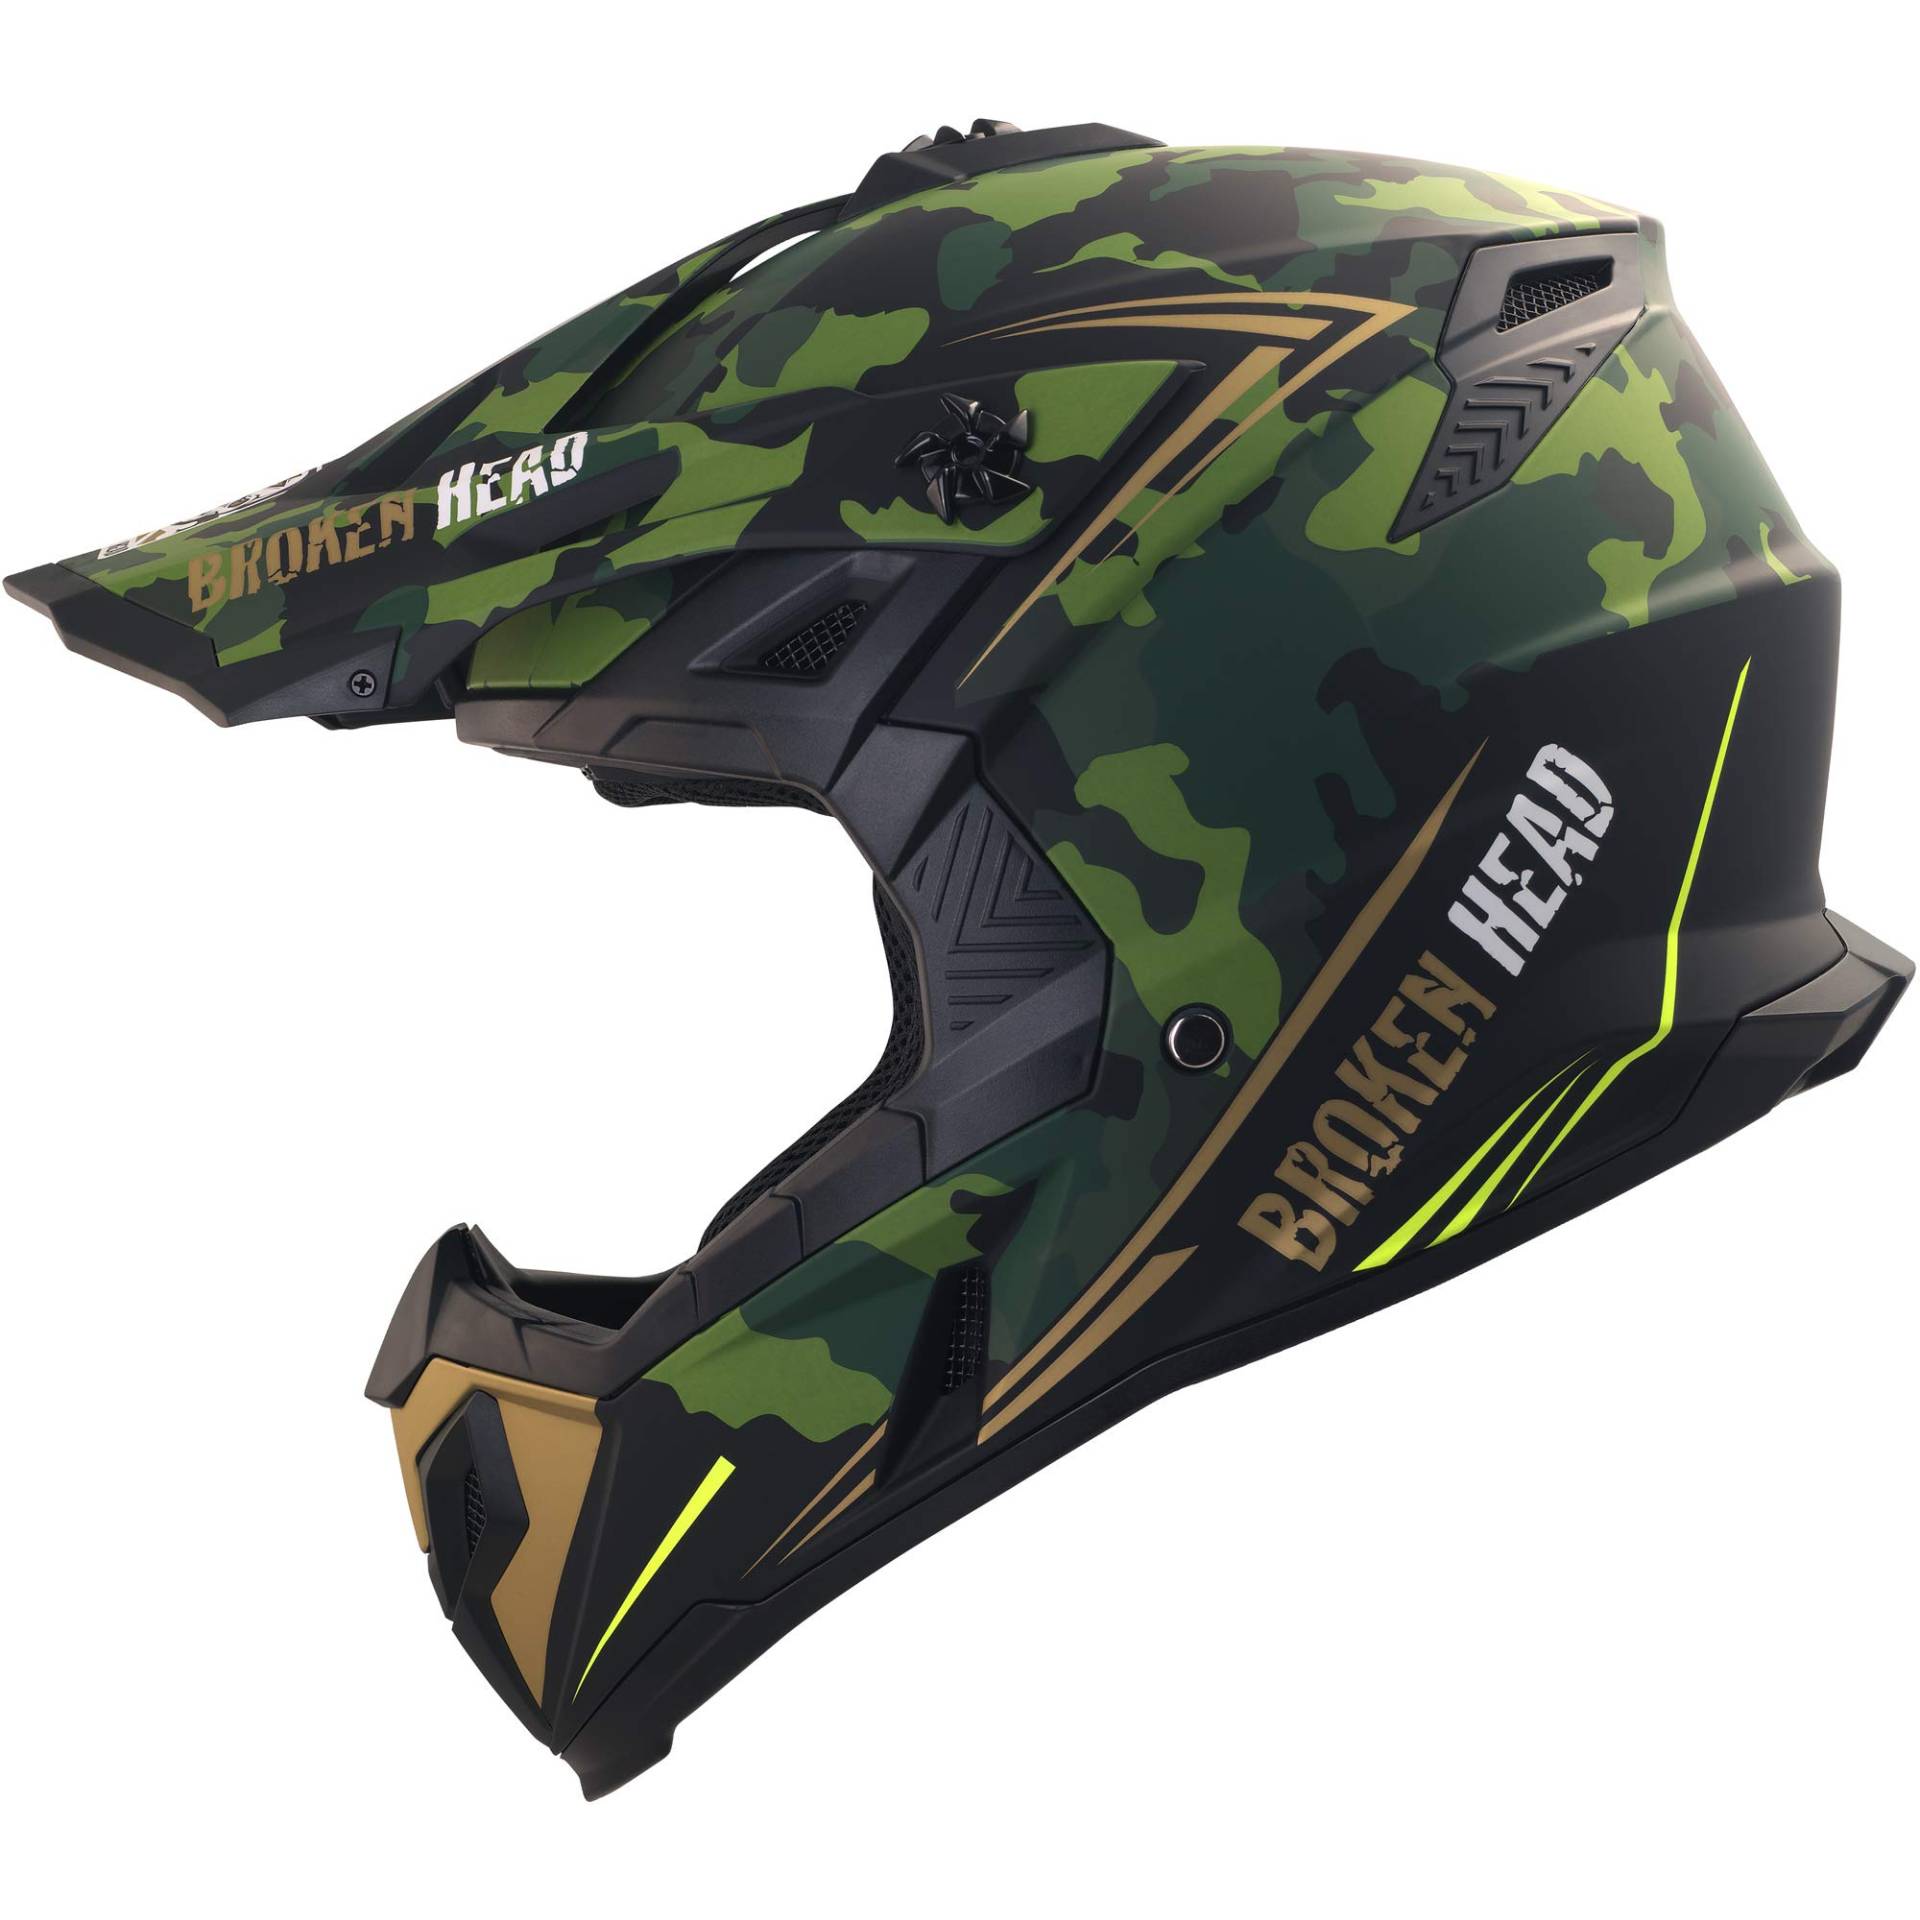 Broken Head Squadron Rebelution Motocross-Helm - Motorrad-Helm Für MX, Sumo und Quad - Camouflage Grün-Gold - Größe S (55-56 cm) von Broken Head